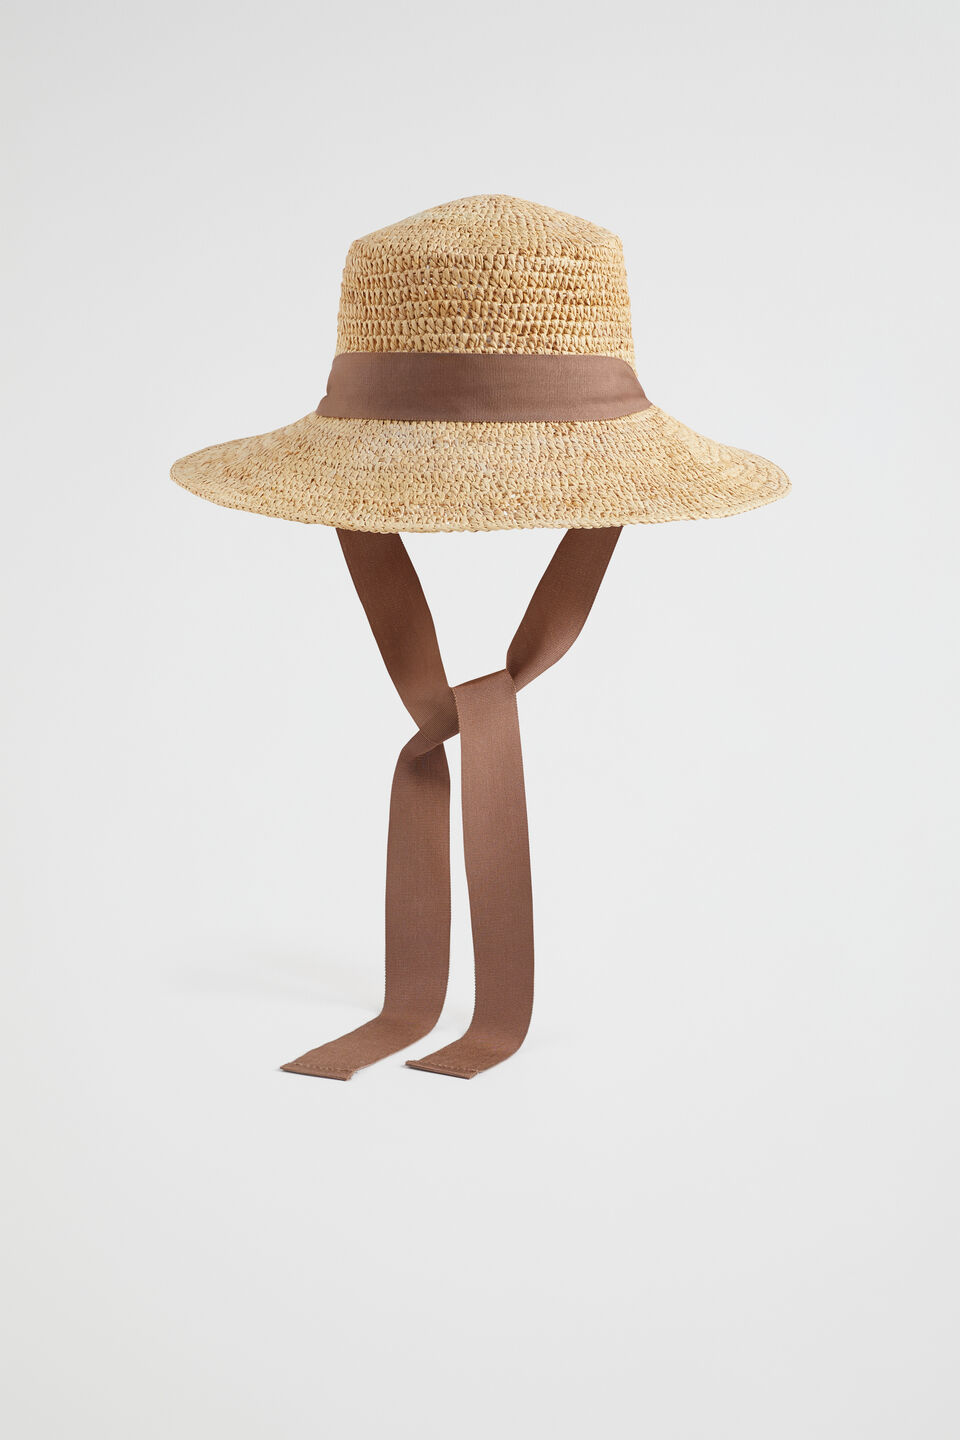 Raffia Bucket Hat  Natural  hi-res